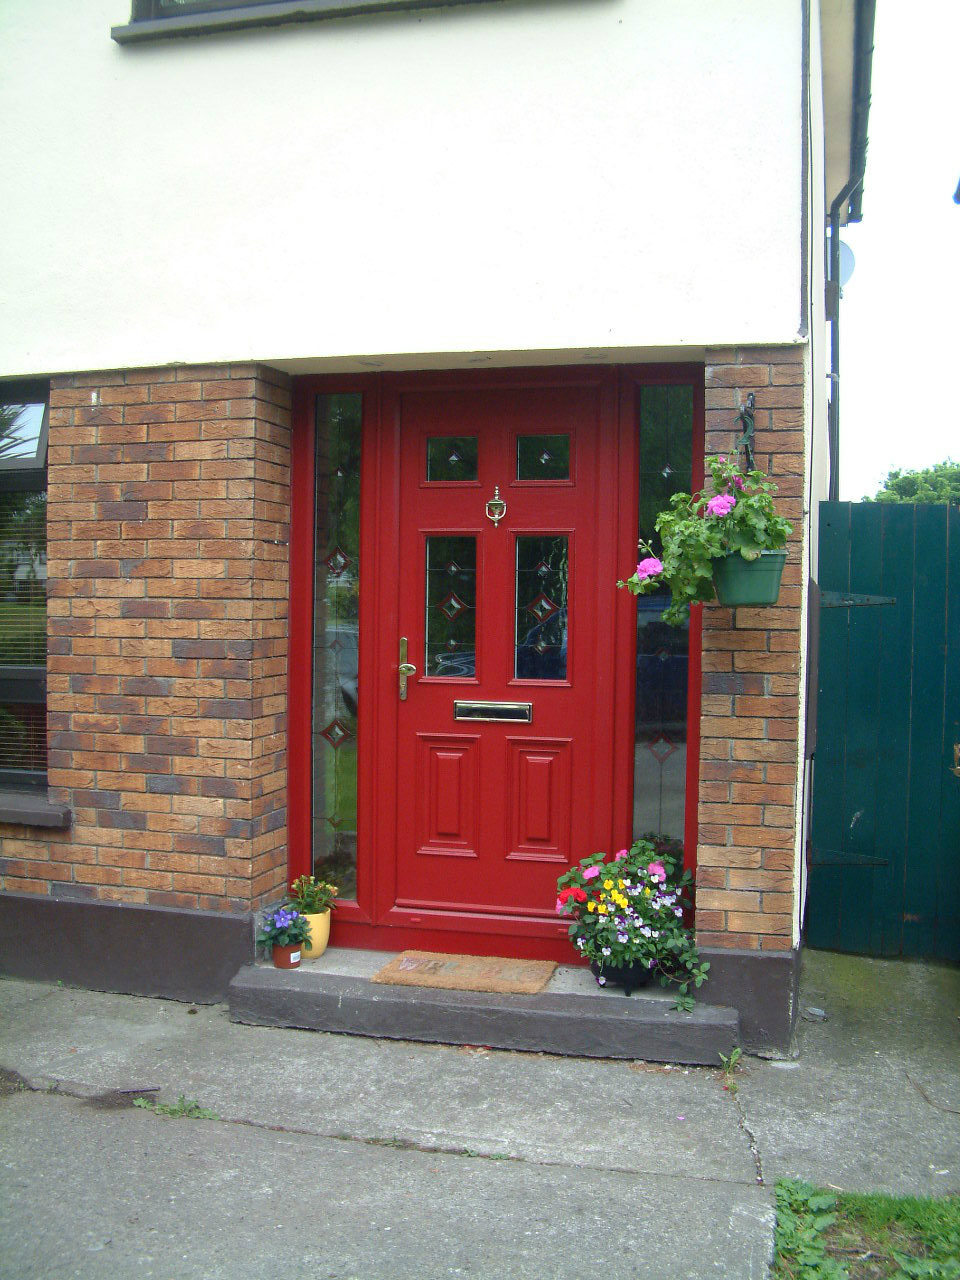 Image Gallery of Windows and Doors - Composite Doors Dublin